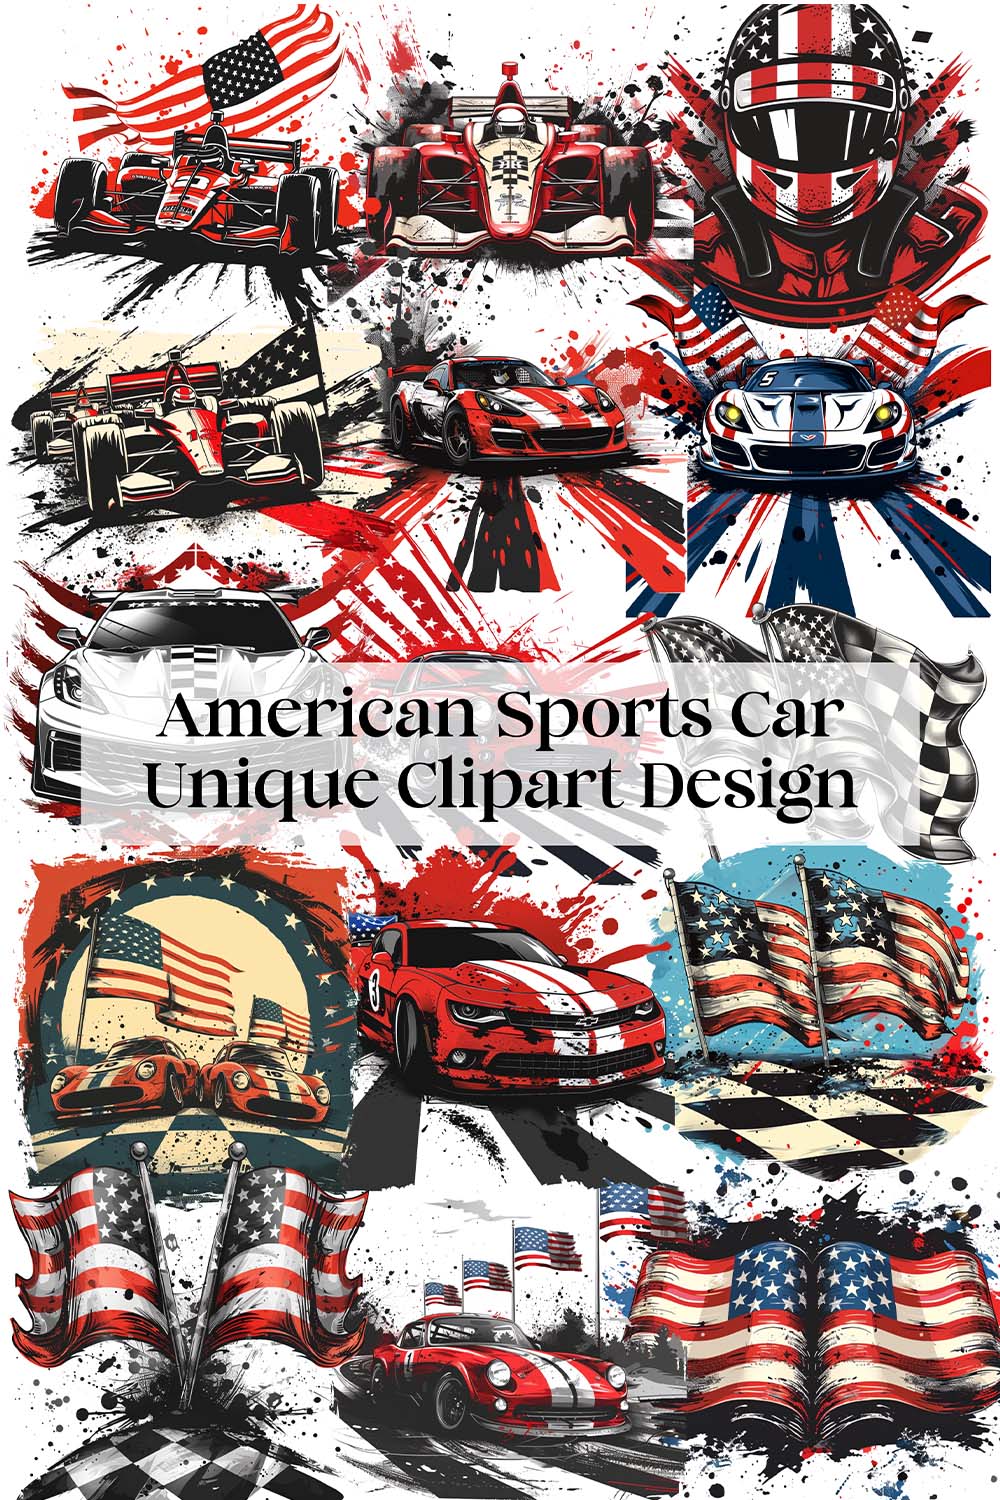 American Sports Car Unique Clipart Design pinterest preview image.